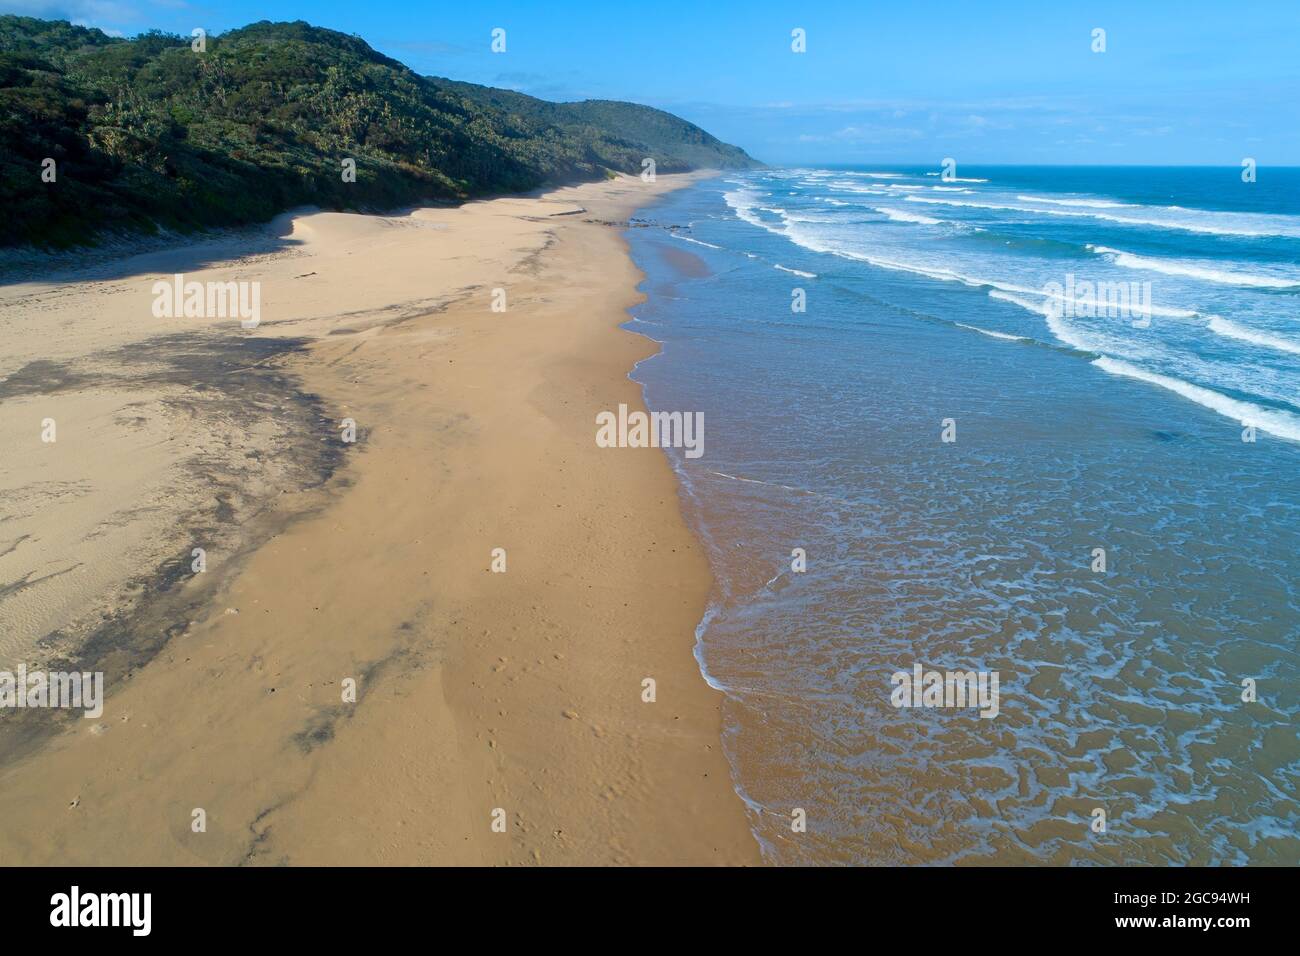 Paesaggistico paesaggio di spiaggia sabbiosa con foresta costiera, Sud Africa Foto Stock